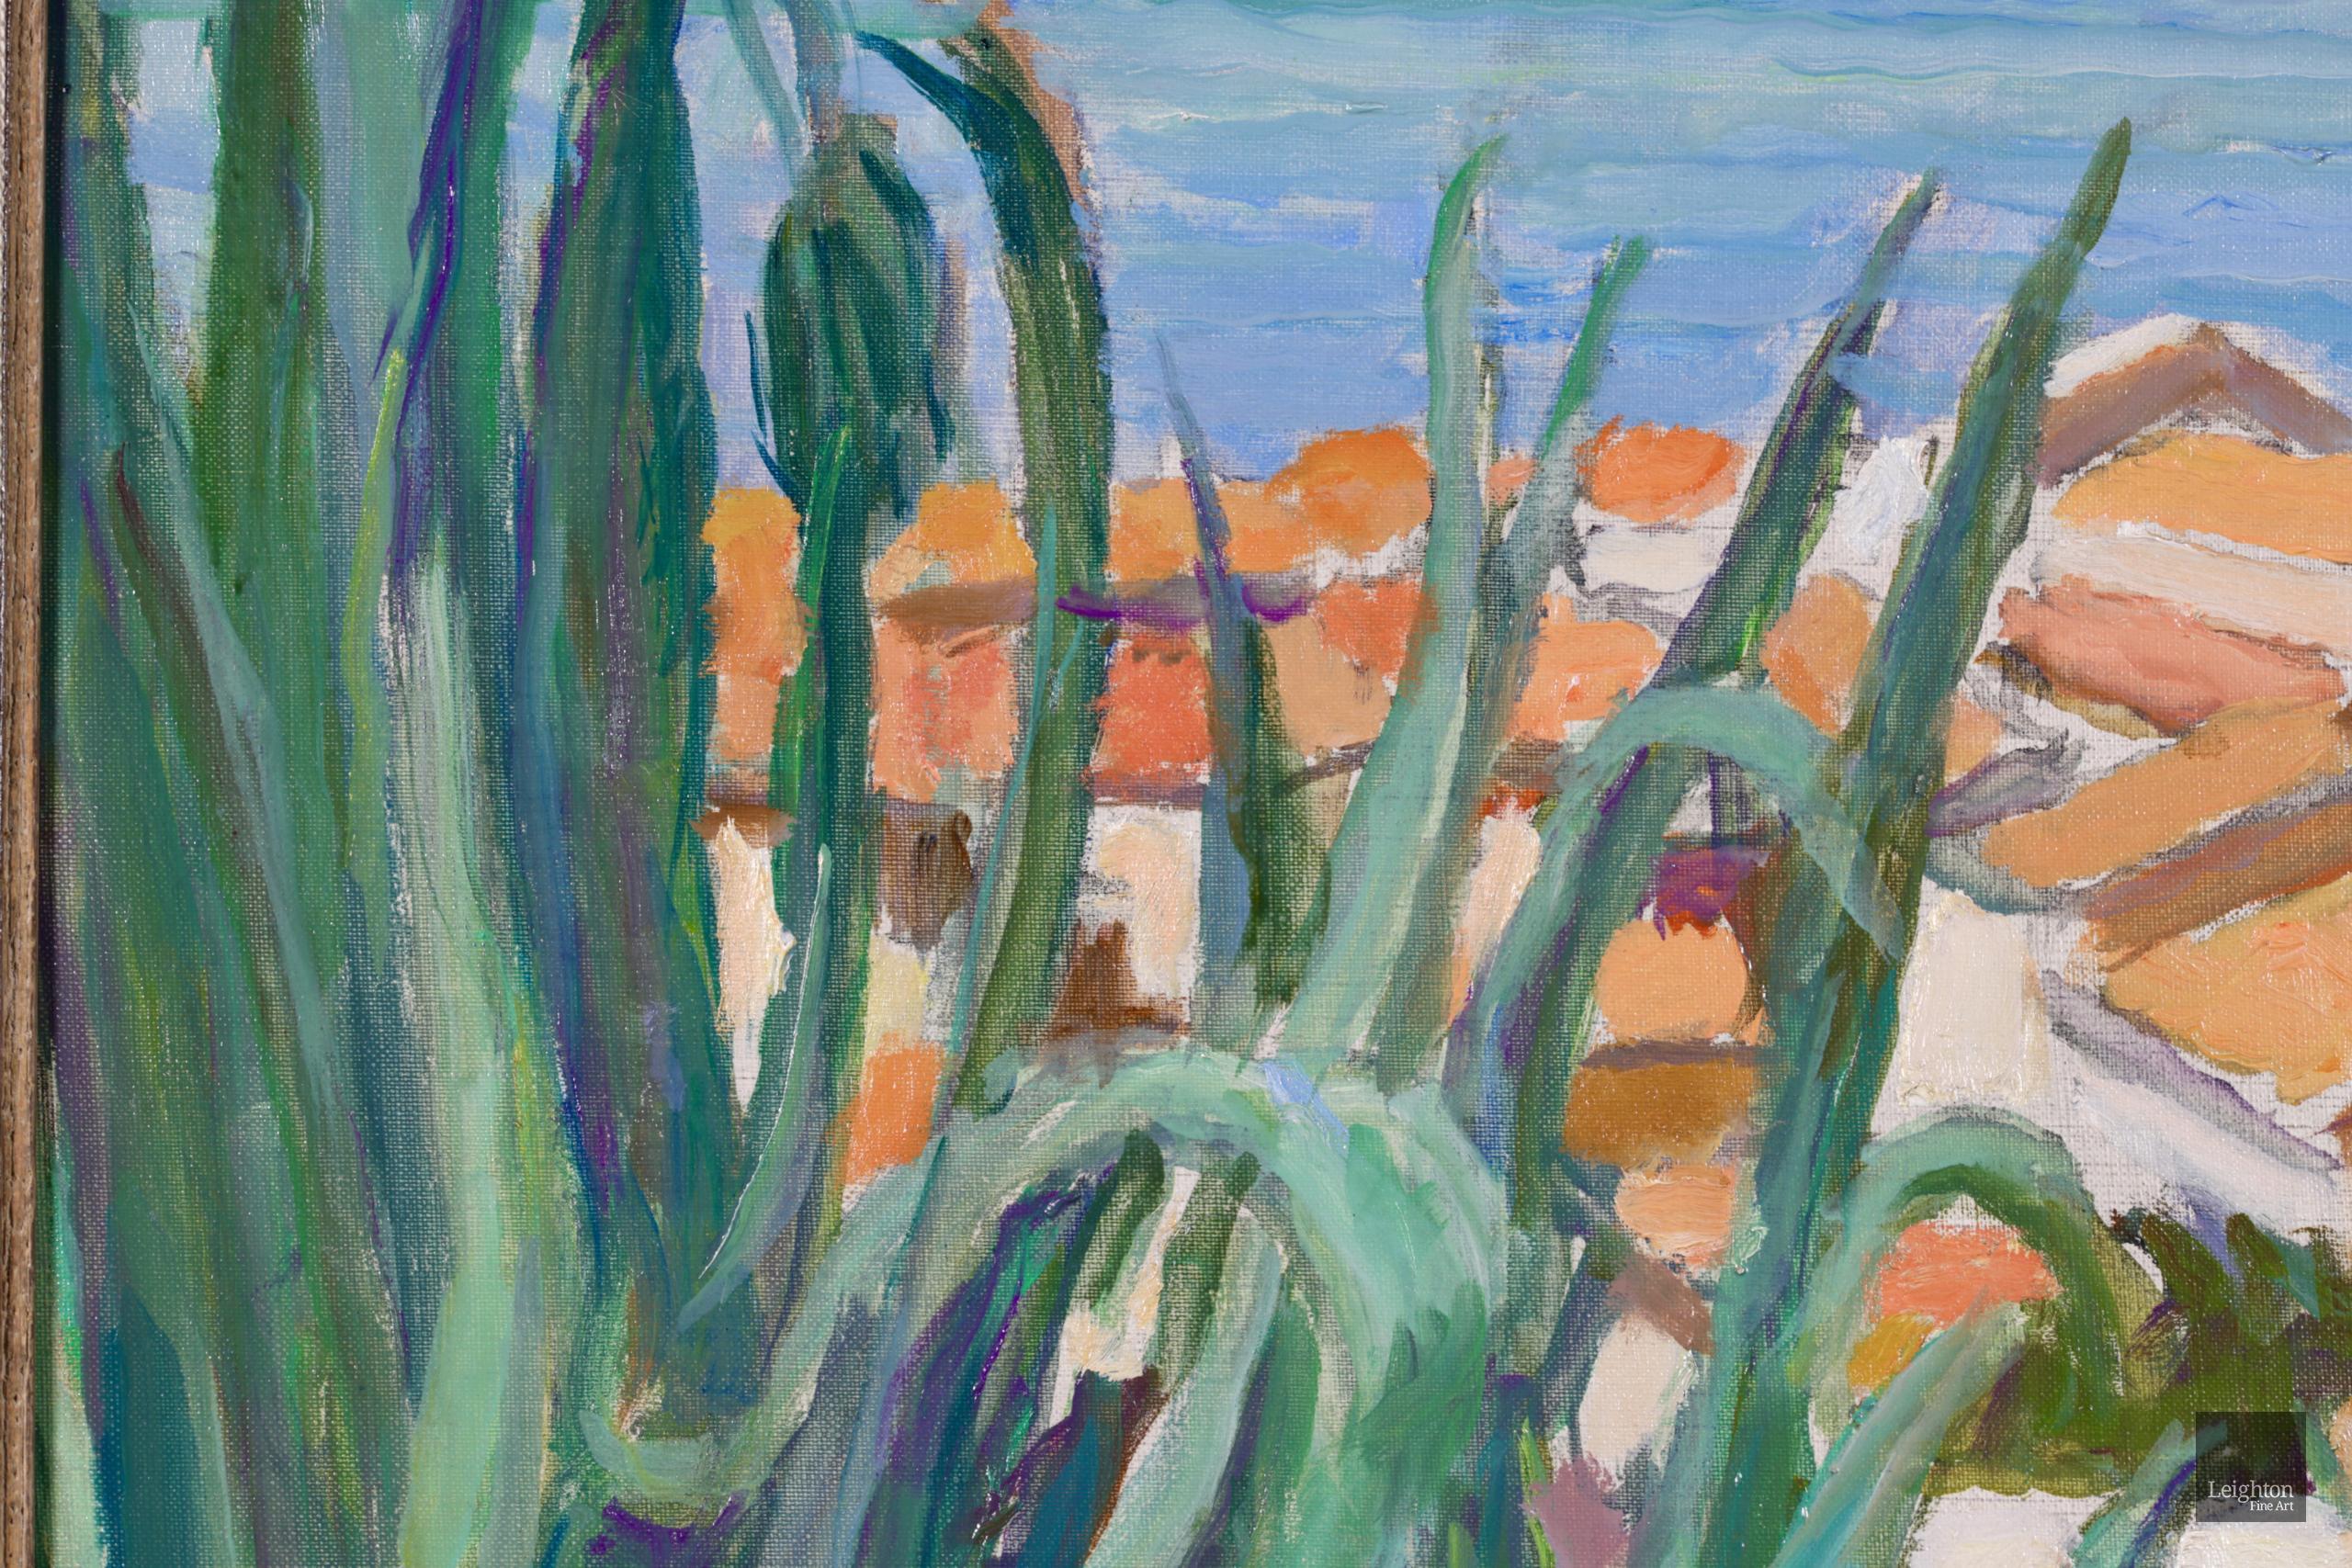 Vue de Saint Tropez - Post Impressionist Oil, Coastal Landscape by Othon Friesz - Gray Figurative Painting by Achille-Émile Othon Friesz